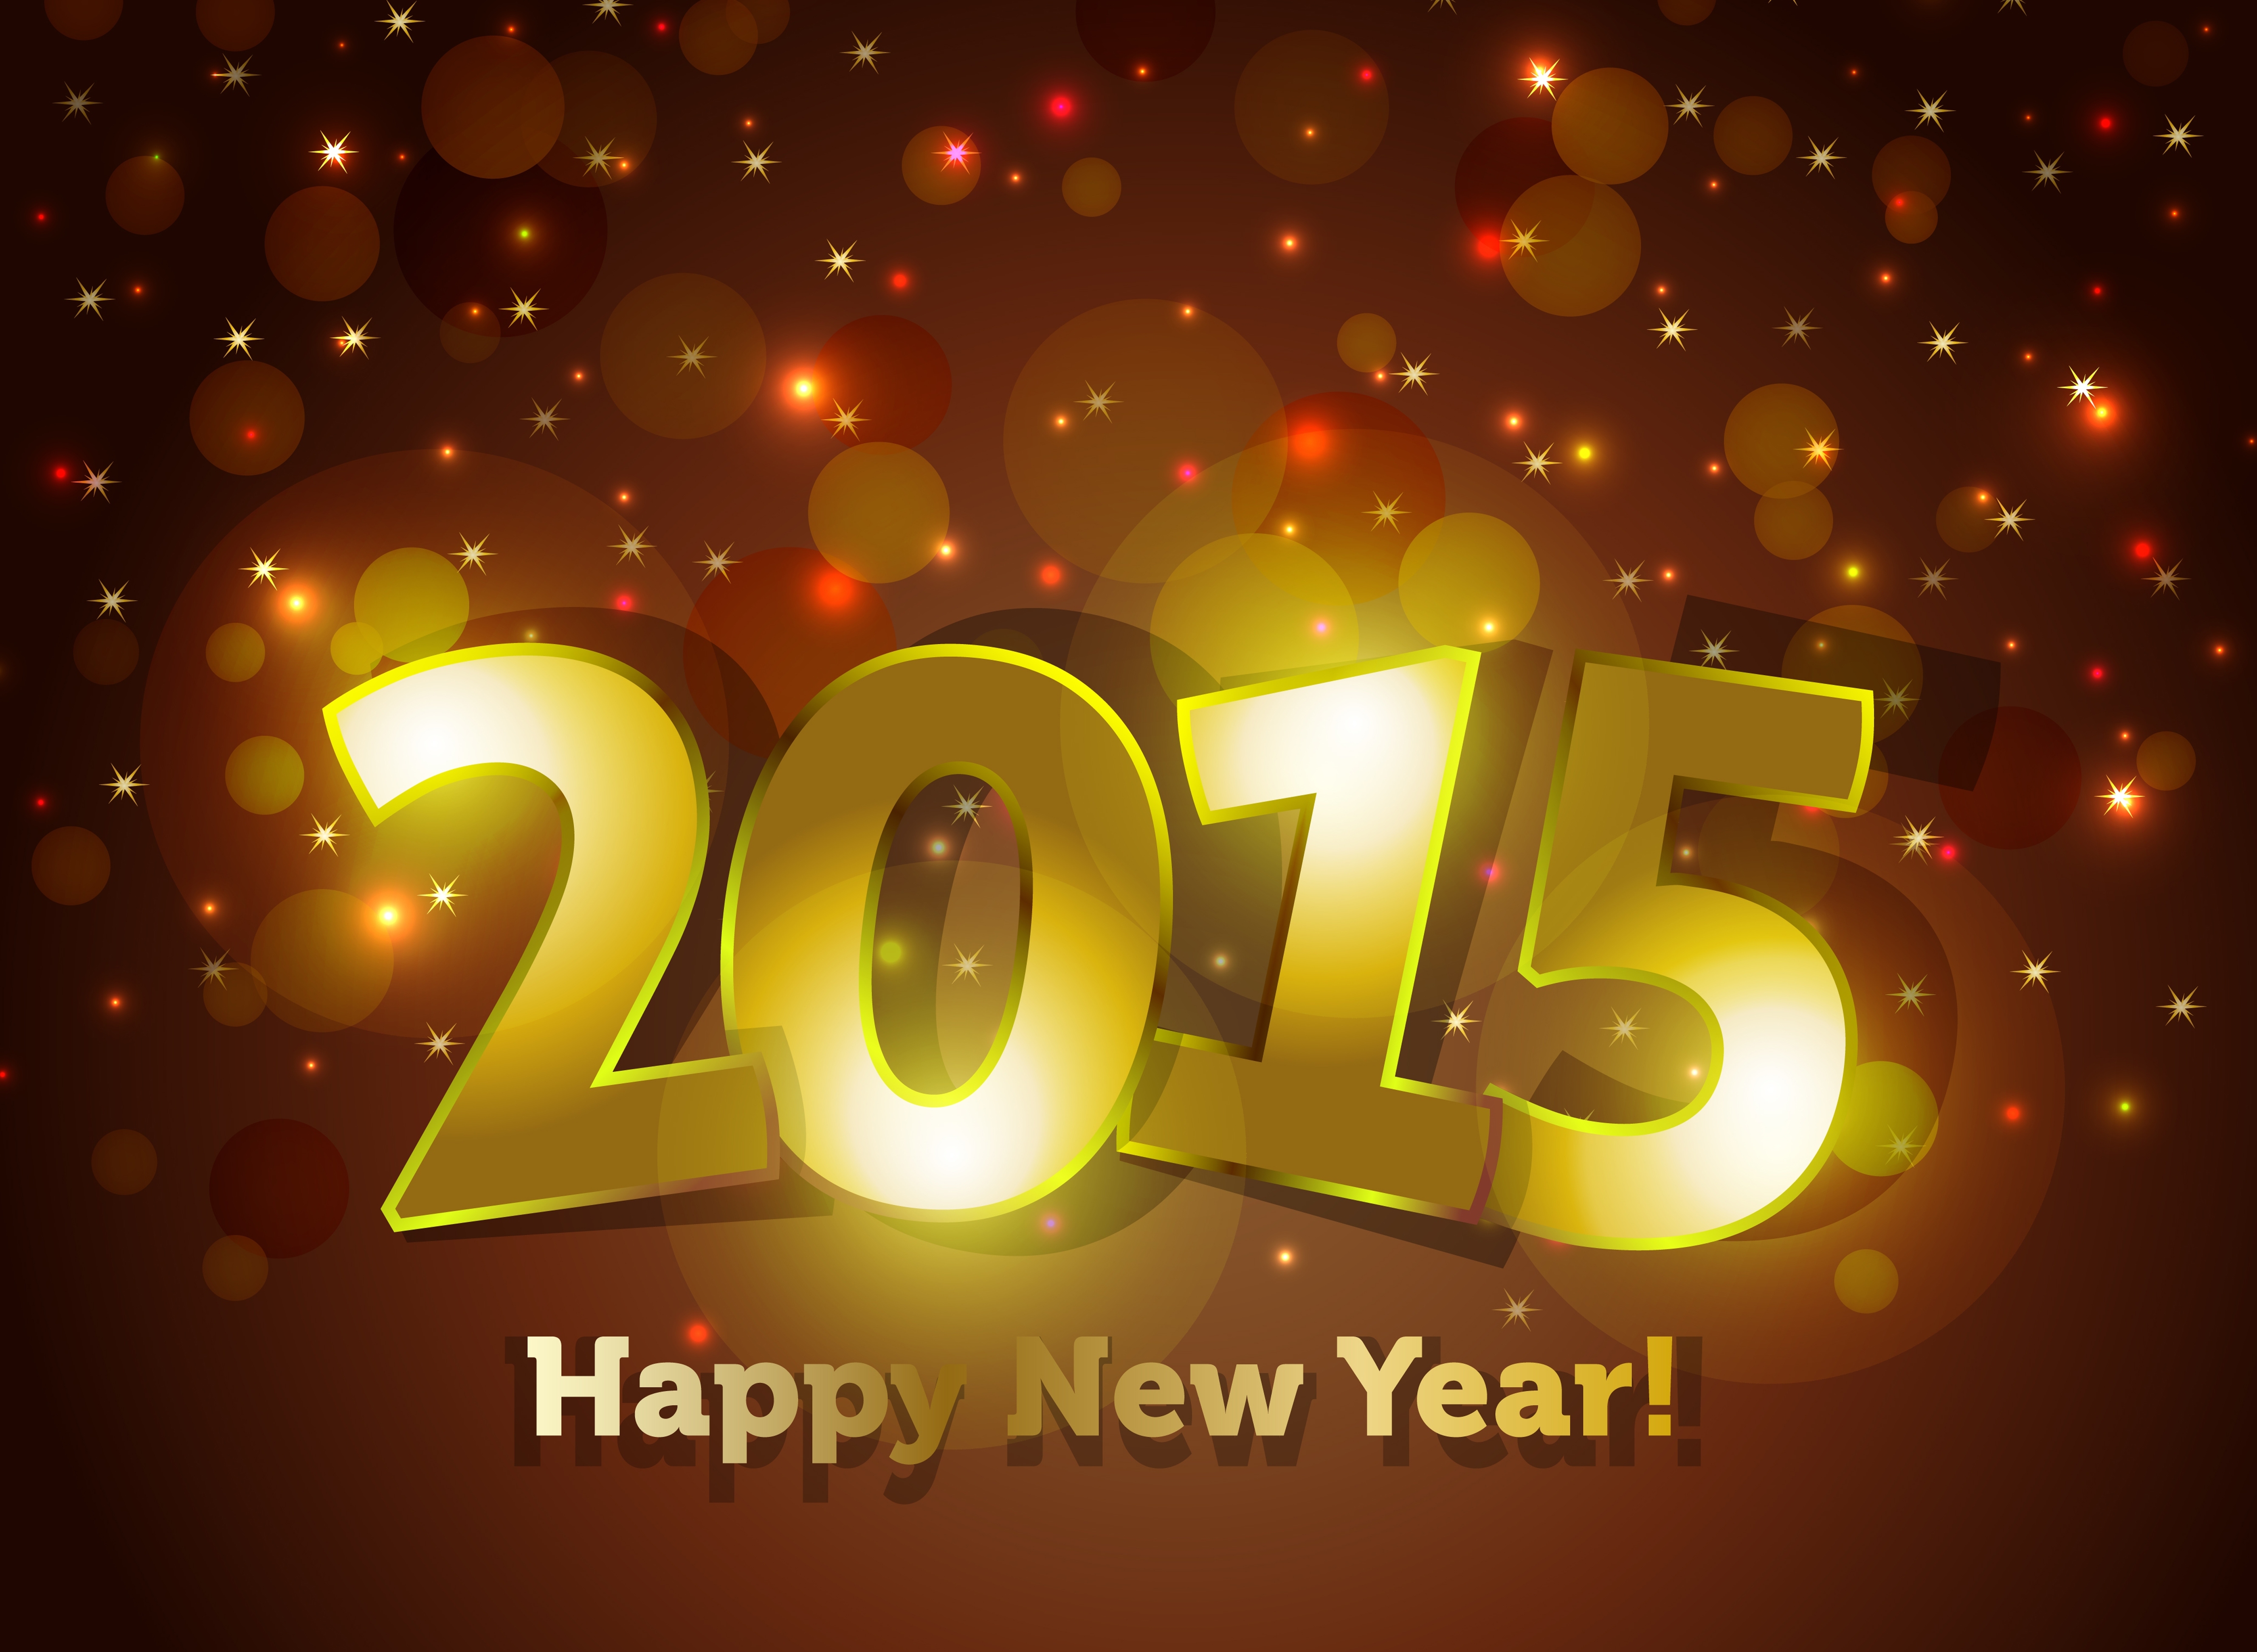 С 2015 годом темп. Новый год 2015. Картинки новый год 2015. С новым годом 2015 картинки. Новогодние открытки 2015.